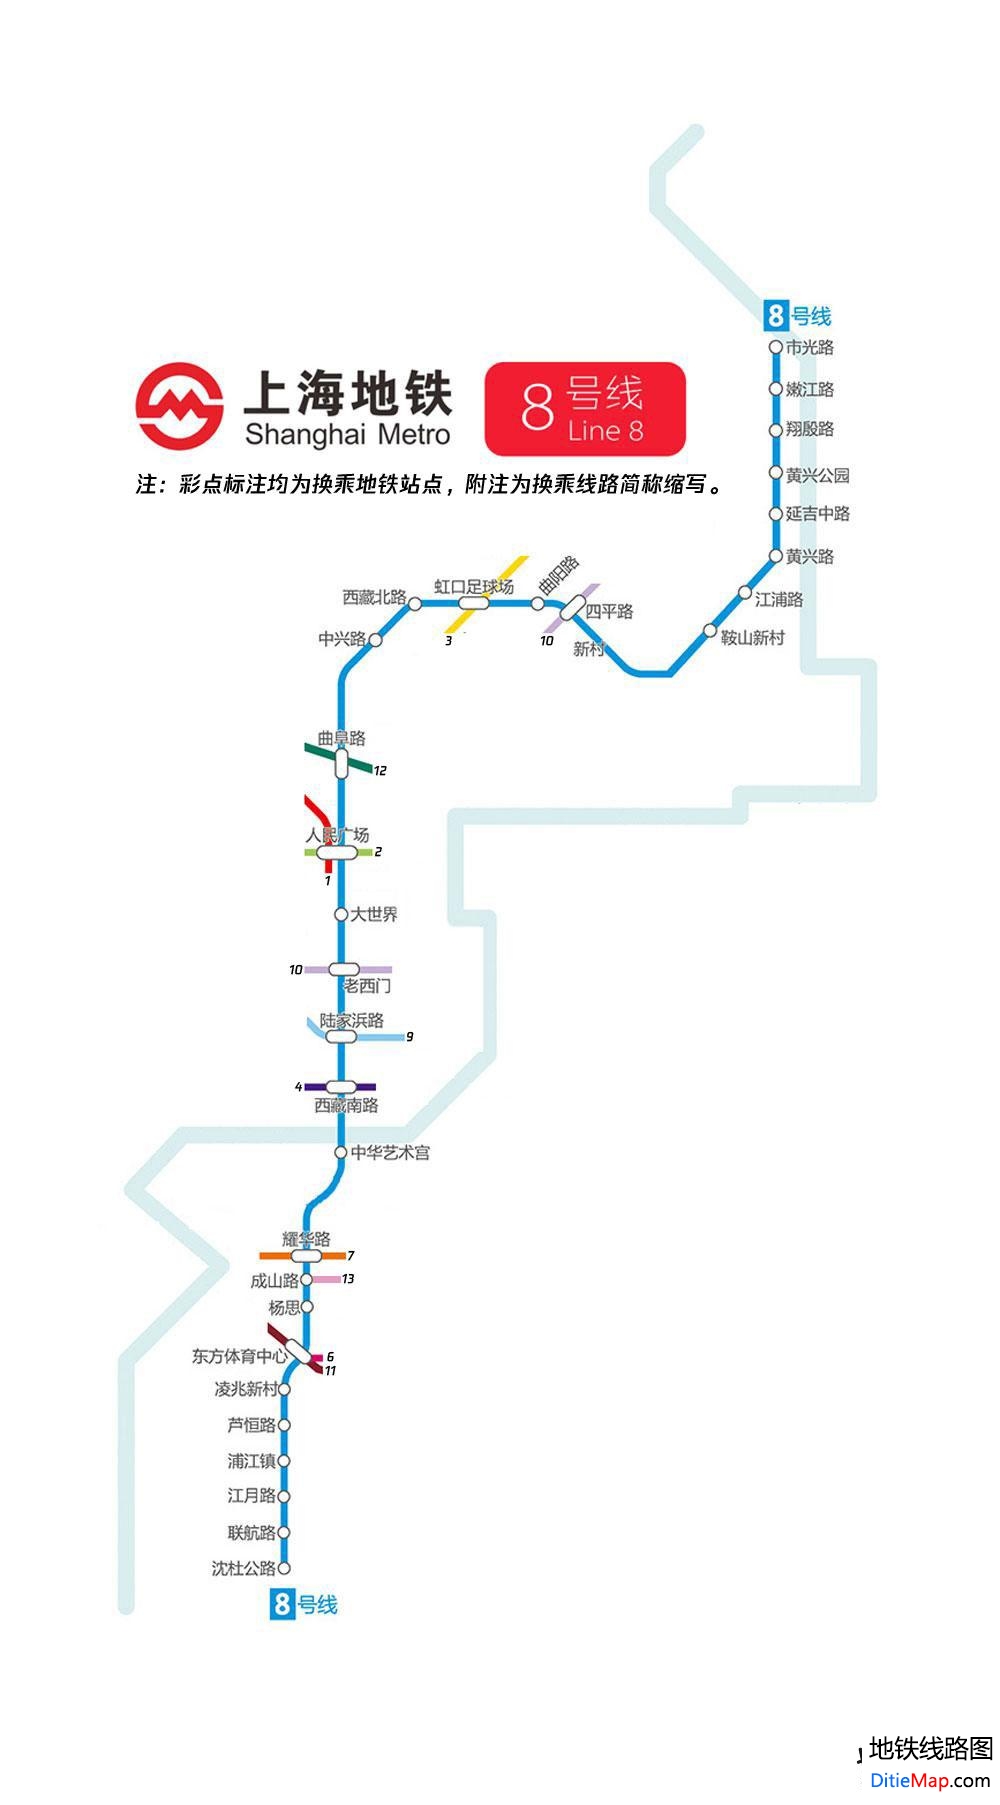 上海地铁8号线线路图 运营时间票价站点 查询下载 上海地铁8号线查询 上海地铁8号线运营时间 上海地铁8号线线路图 上海地铁8号线 上海地铁八号线 上海地铁线路图  第2张